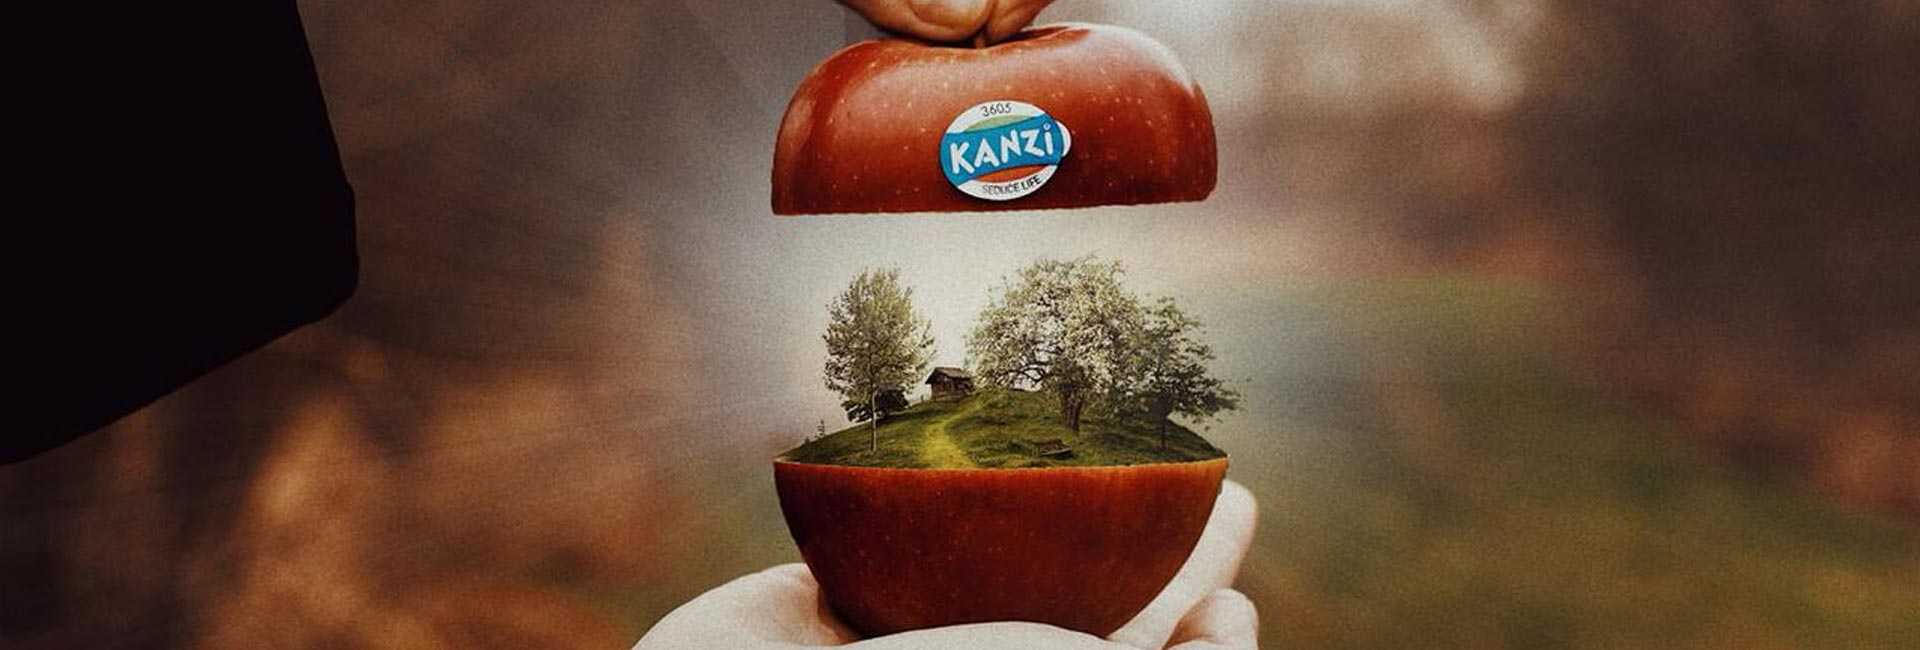 Instagram-Kampagne für Kanzi